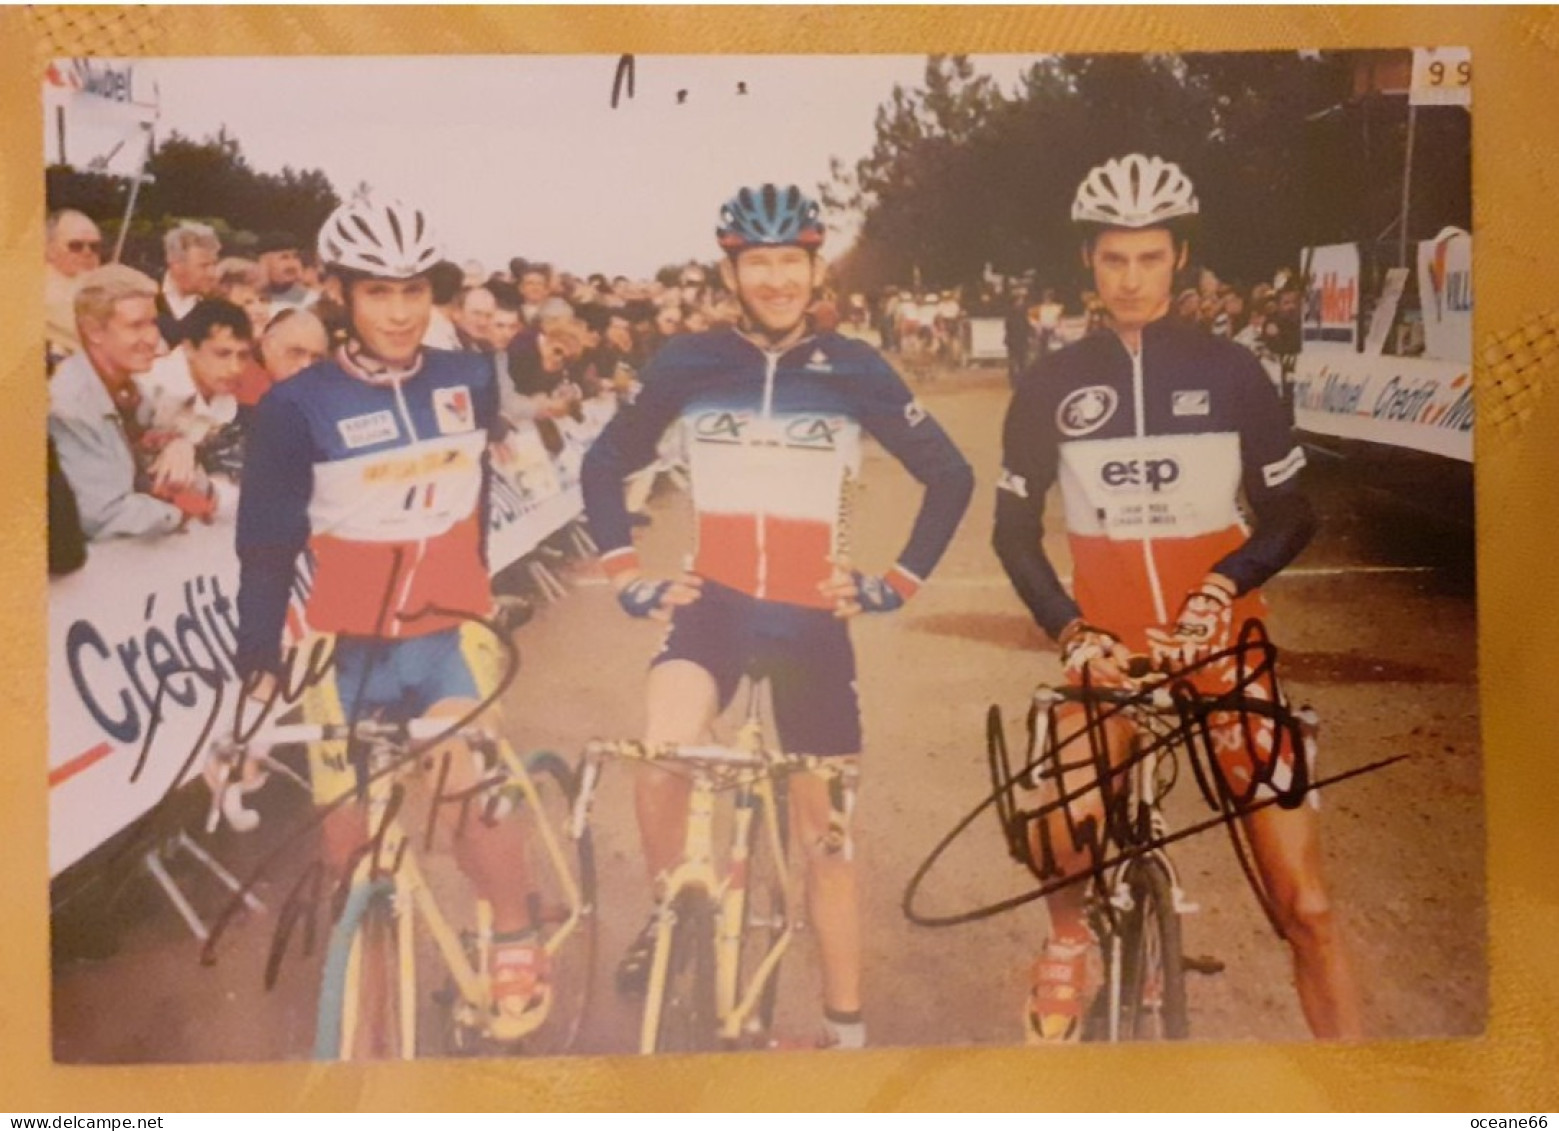 Autographes David Derepas Et Christophe Morel Avec François Simon Champions De France - Cyclisme